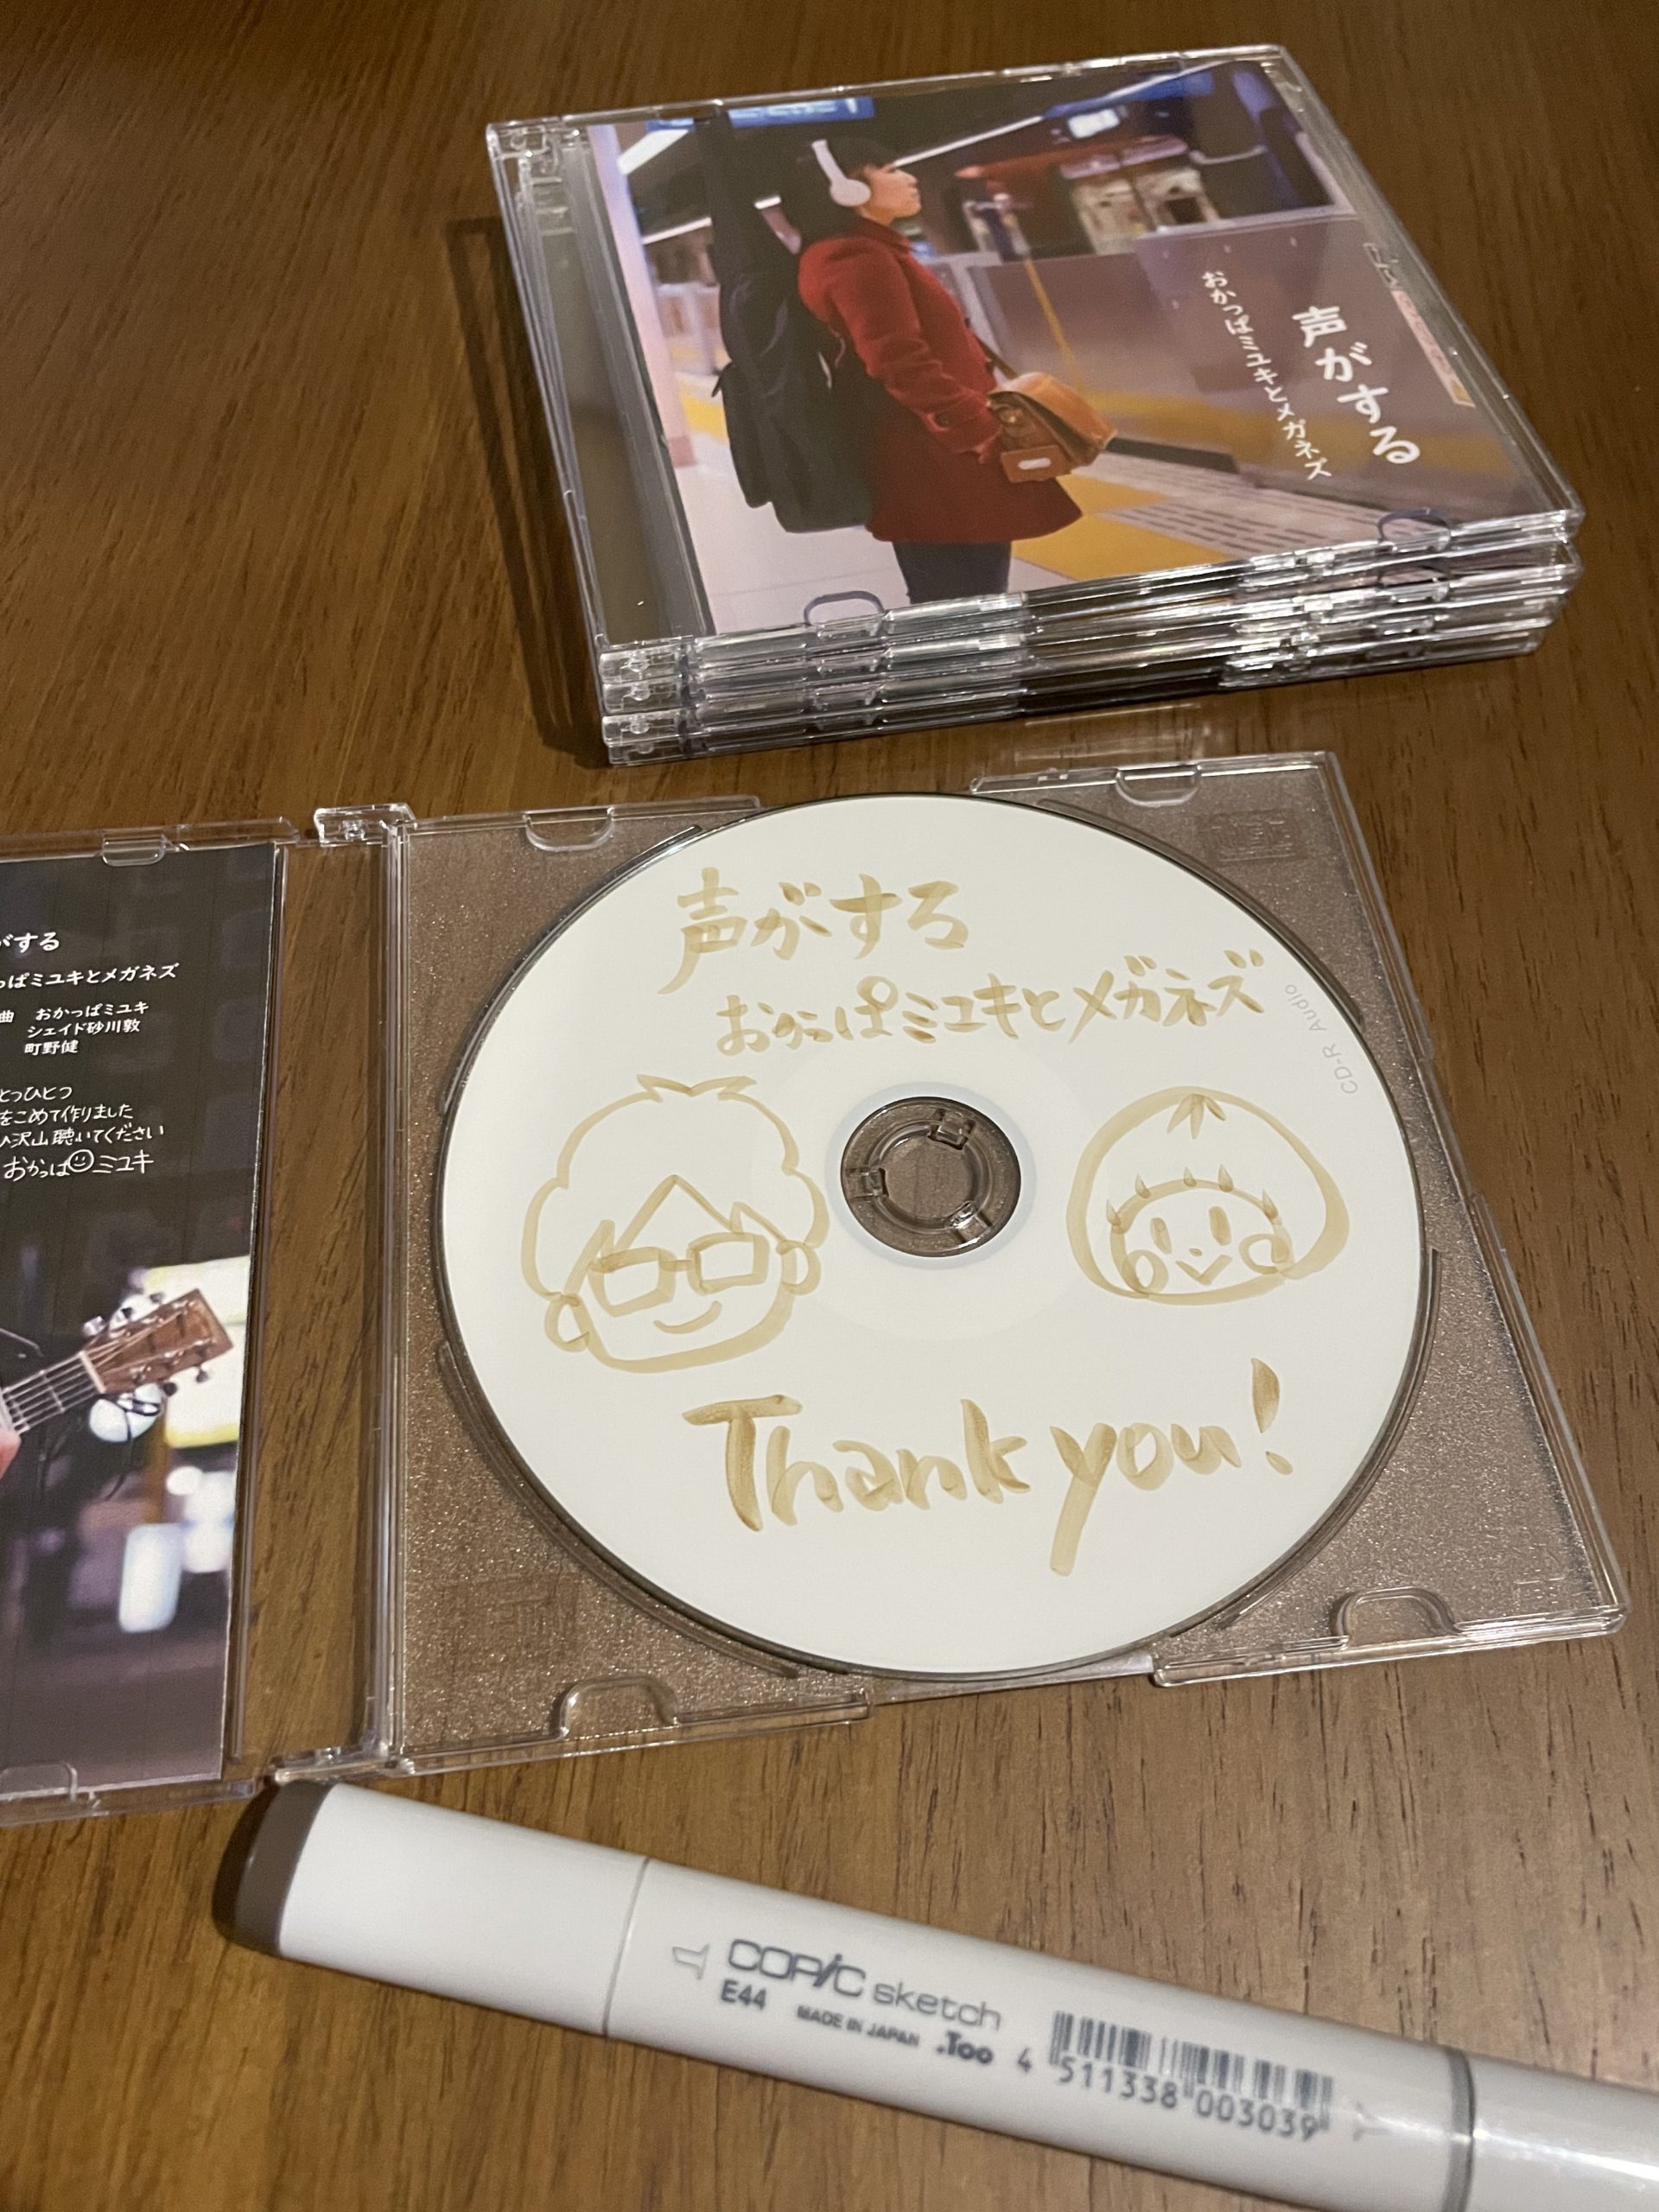 1枚1枚手作りしているCDの写真。おかっぱミユキとメガネズの新作CD。